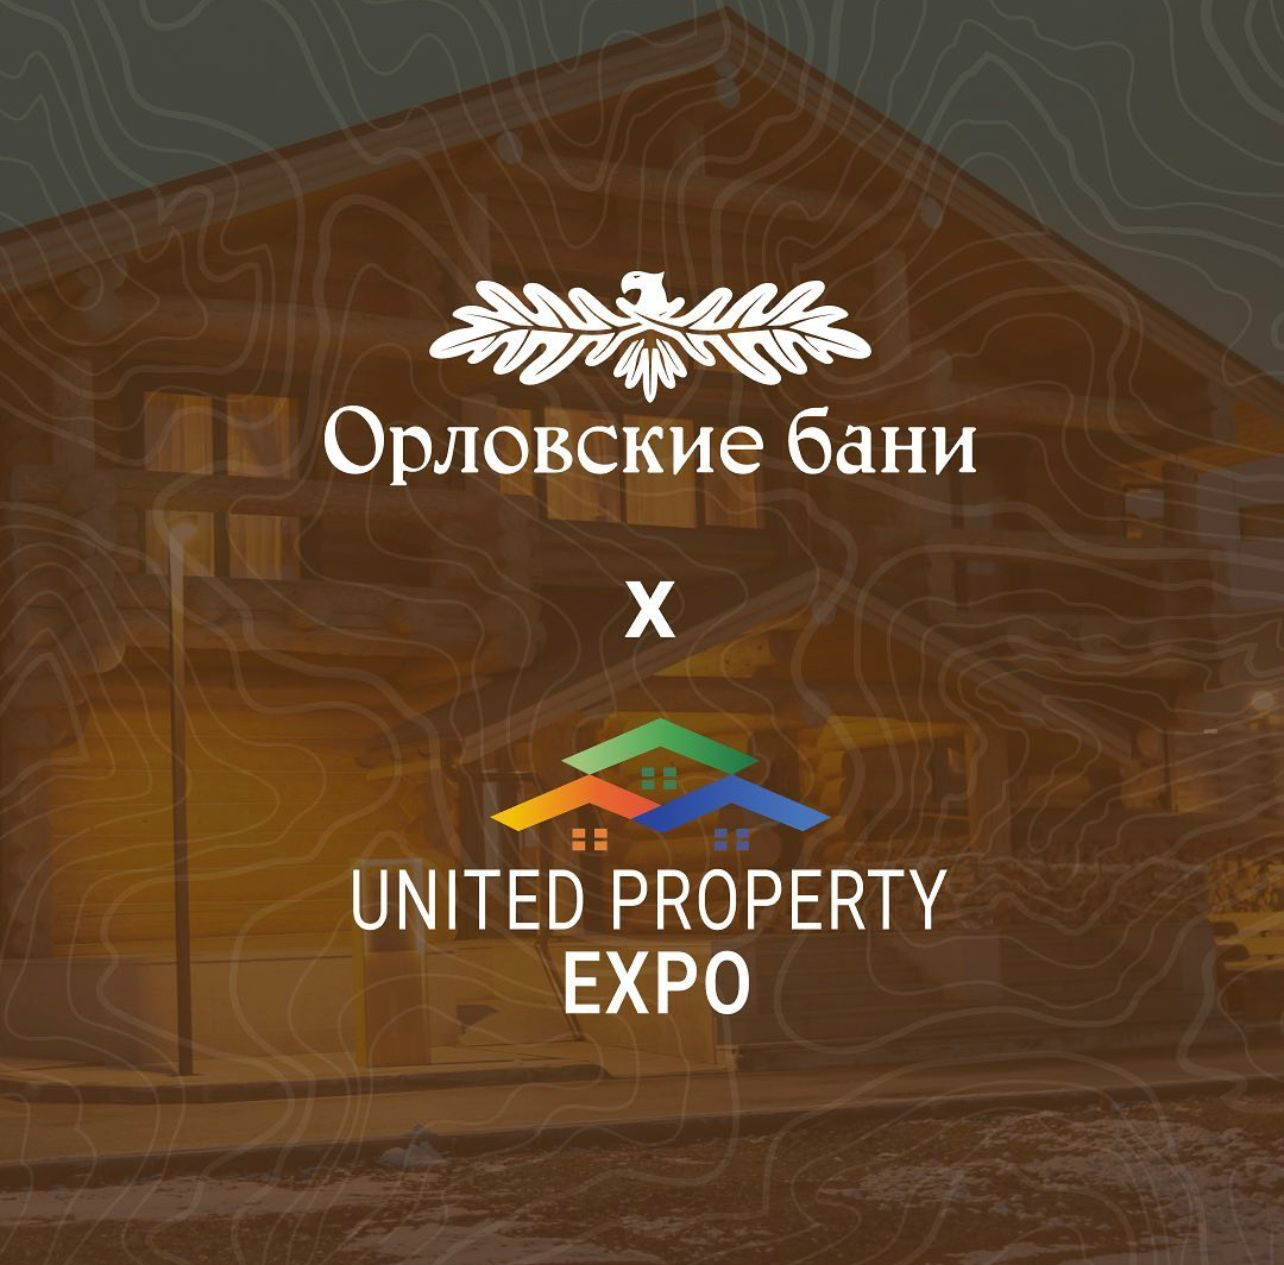 «Орловские бани» стали партнером выставки United property expo! 